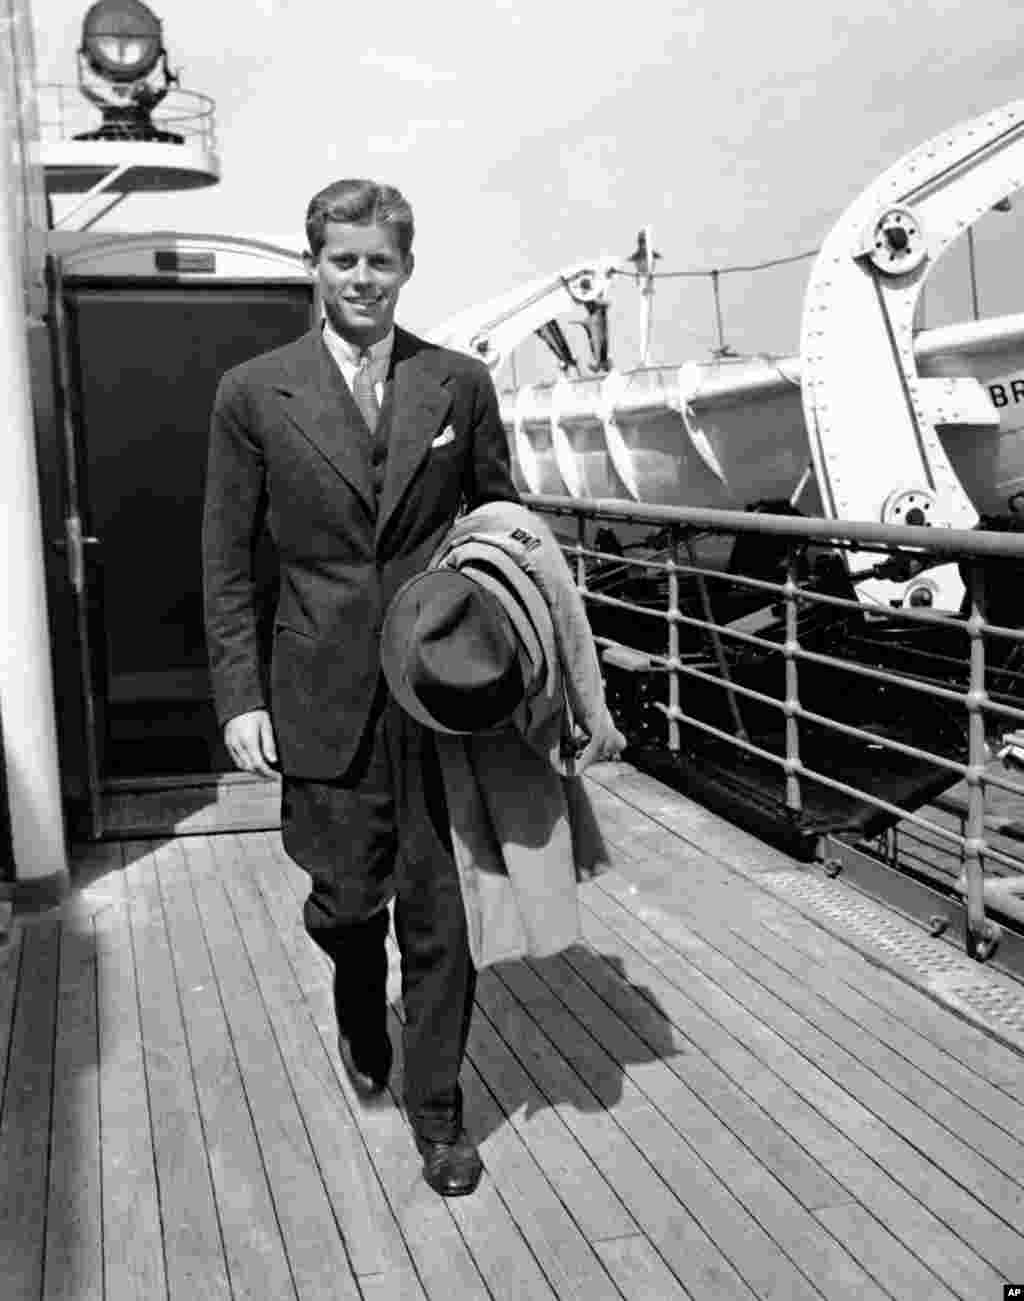 Майбутній президент США Джон Кеннеді повертається в Нью-Йорк після літньої відпустки в Європі (1938 рік). Через три роки він почне службу на флоті, а після неї обереться до Конгресу. У 1961 році Кеннеді став президентом США